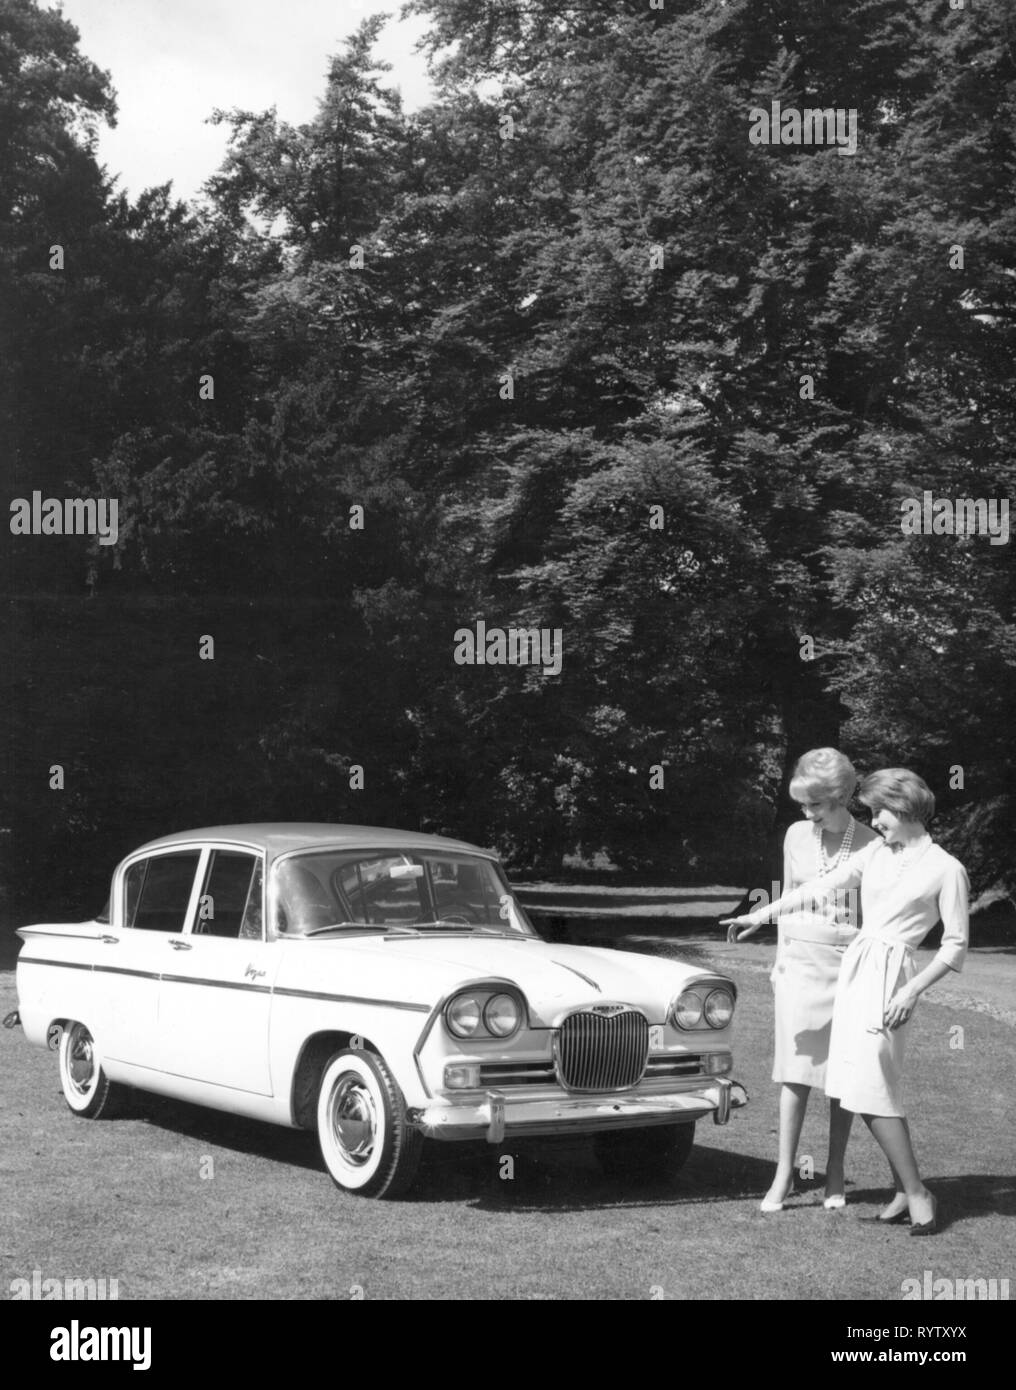 Trasporti / trasporto auto, varianti del veicolo, cantante Vogue, vista dal davanti destro, Inghilterra, agli inizi degli anni sessanta, Additional-Rights-Clearance-Info-Not-Available Foto Stock